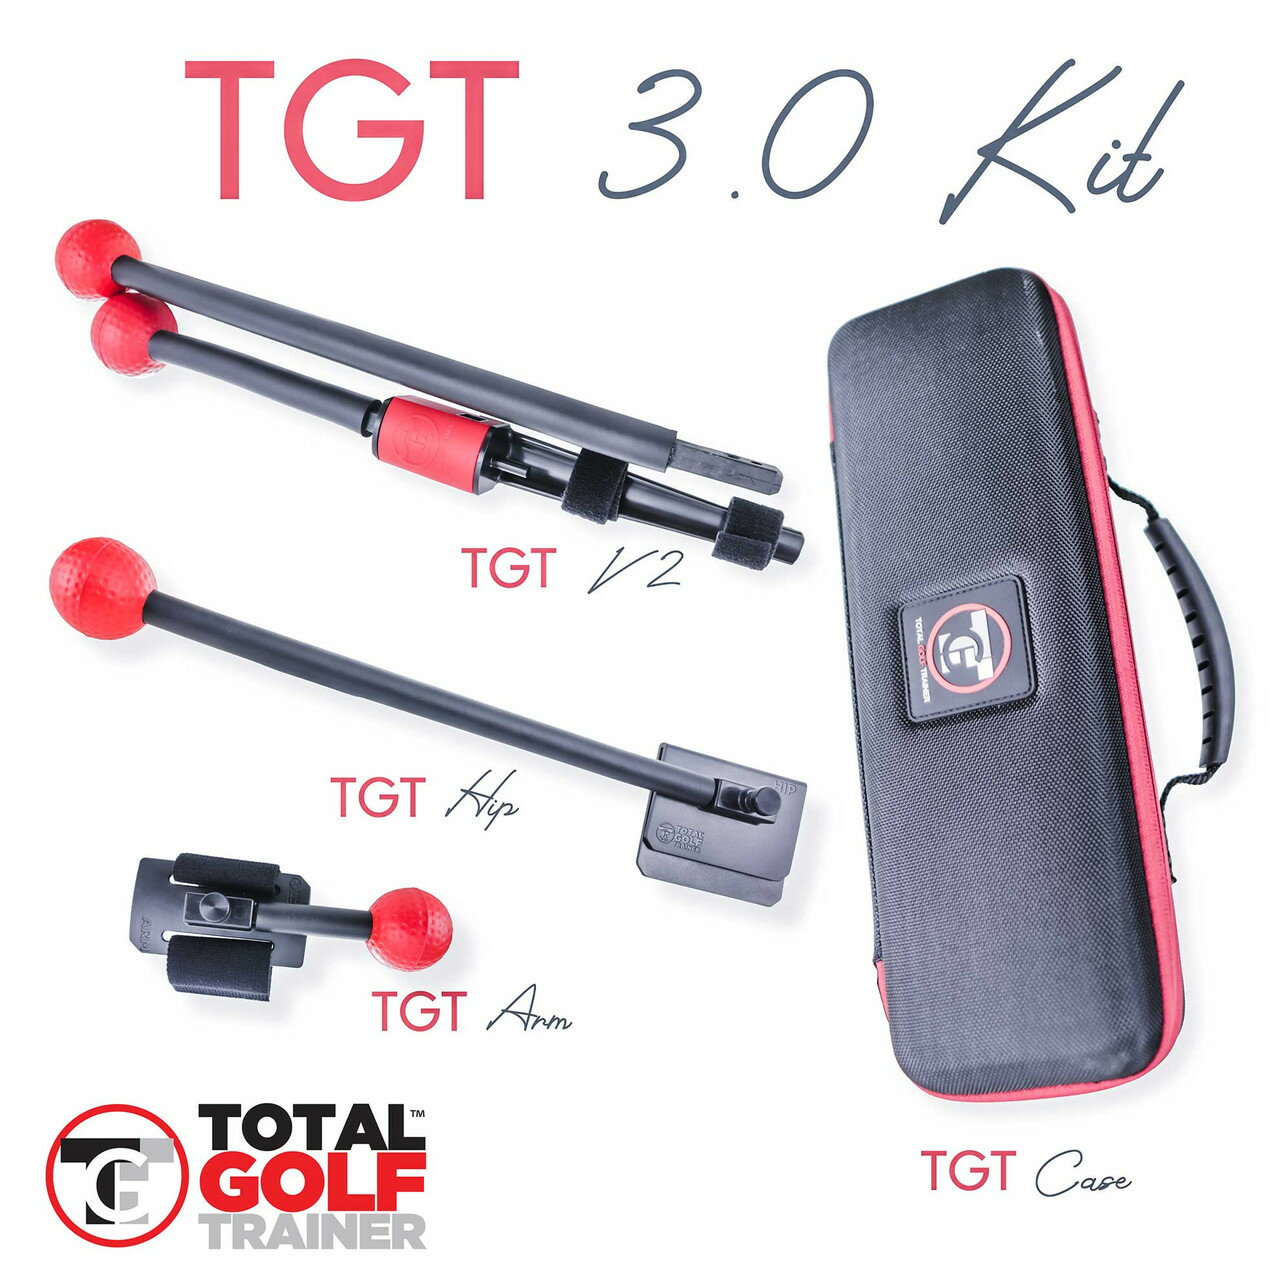 【TGT Golf】 TGT 3.0 kit 高爾夫 動作訓練 動作調整 力量訓練 三合一組 美國原廠正品【正元精密】